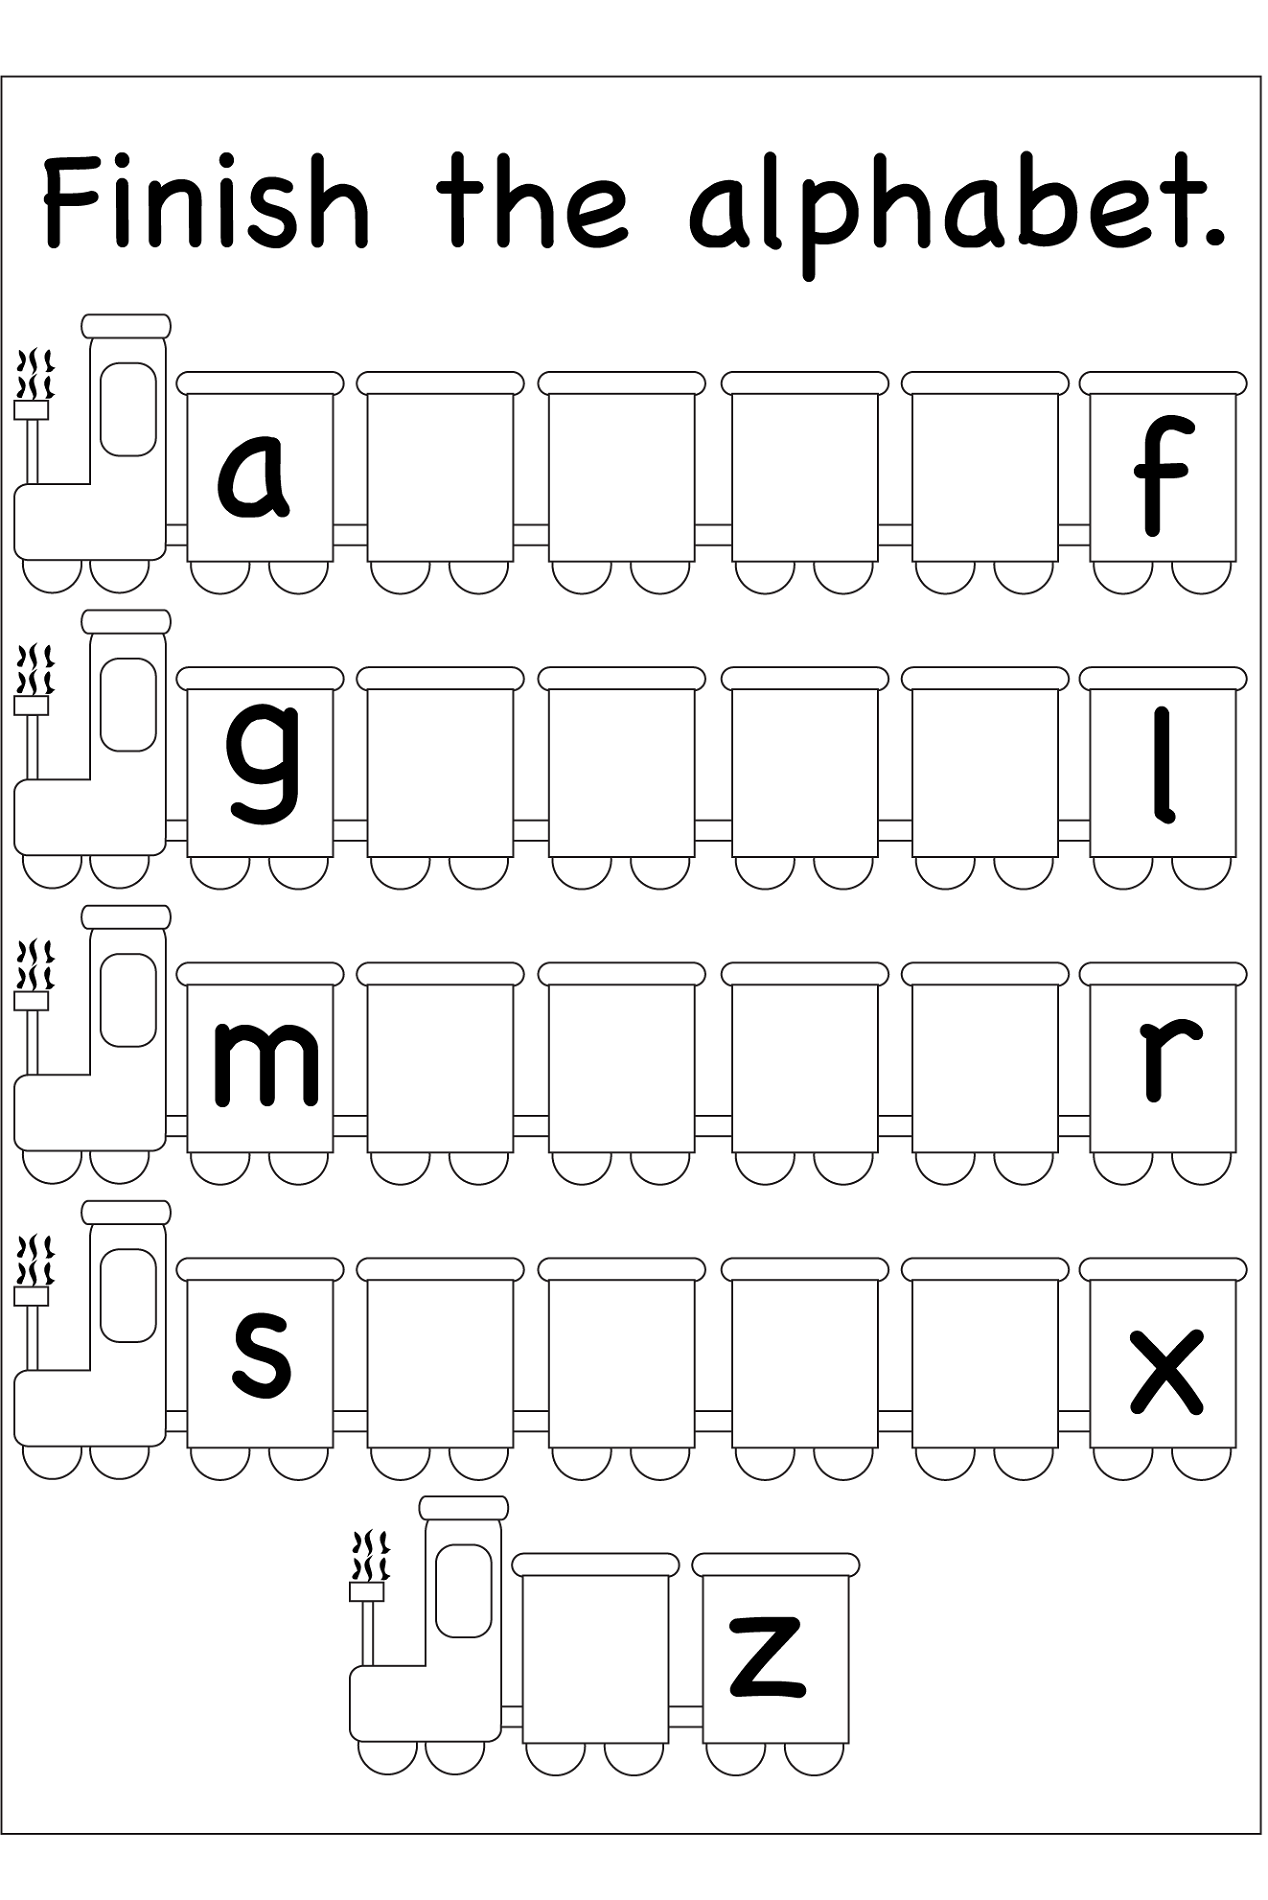 45 Alphabet Printing Worksheets Image Worksheet For Kids